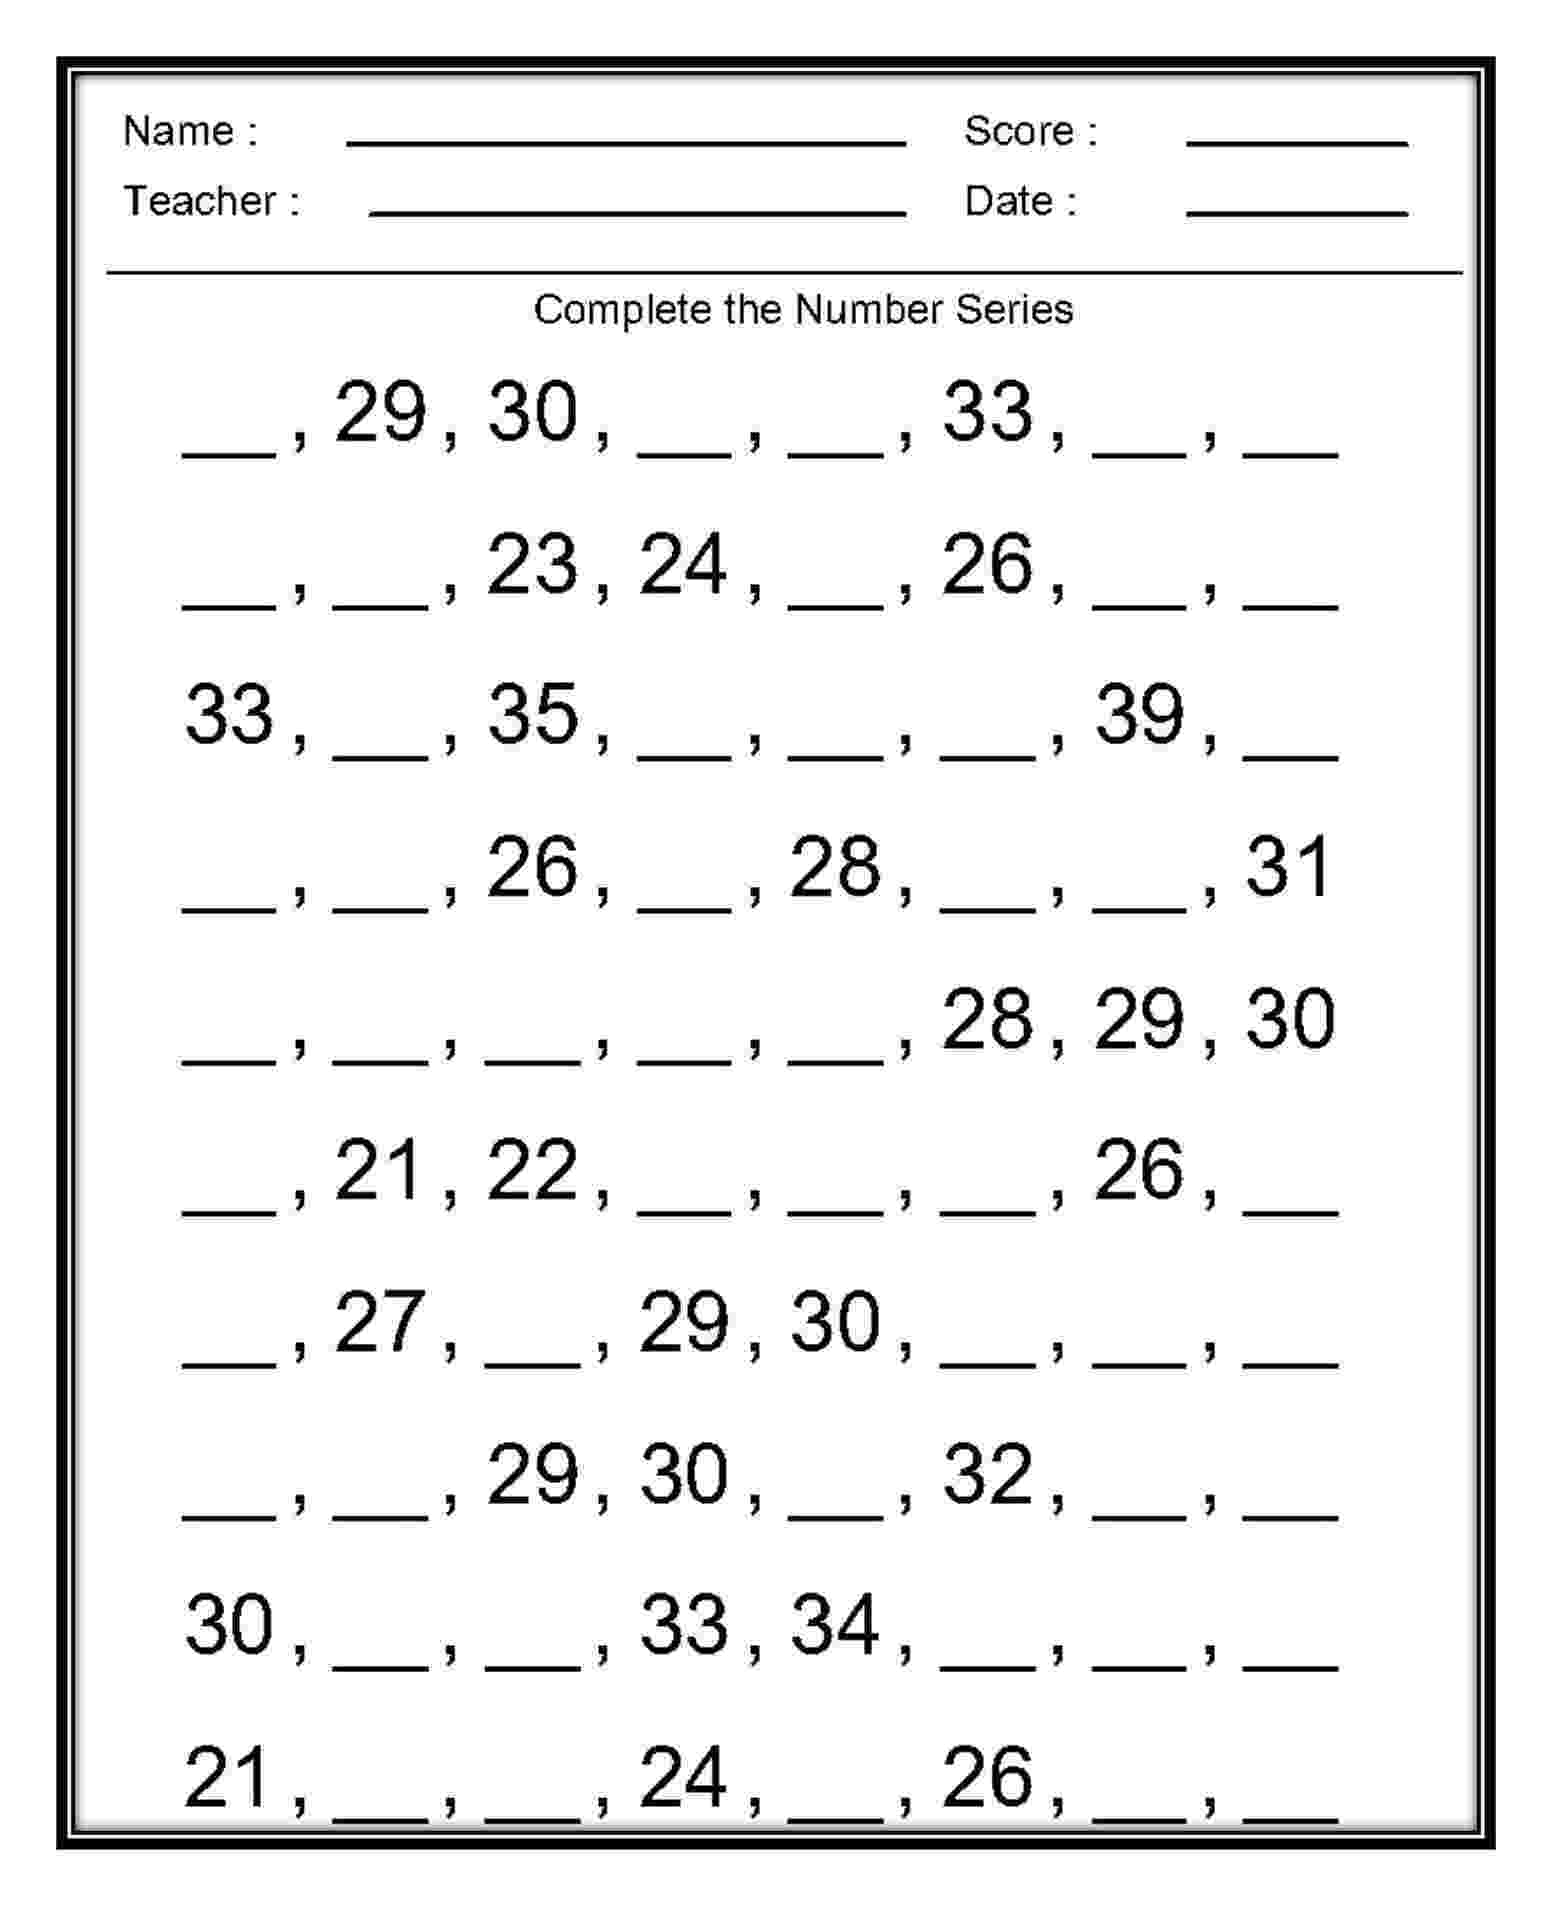 maths worksheets for grade 1 download 1st grade math worksheets counting by 1s 5s and 10s download worksheets grade maths 1 for 